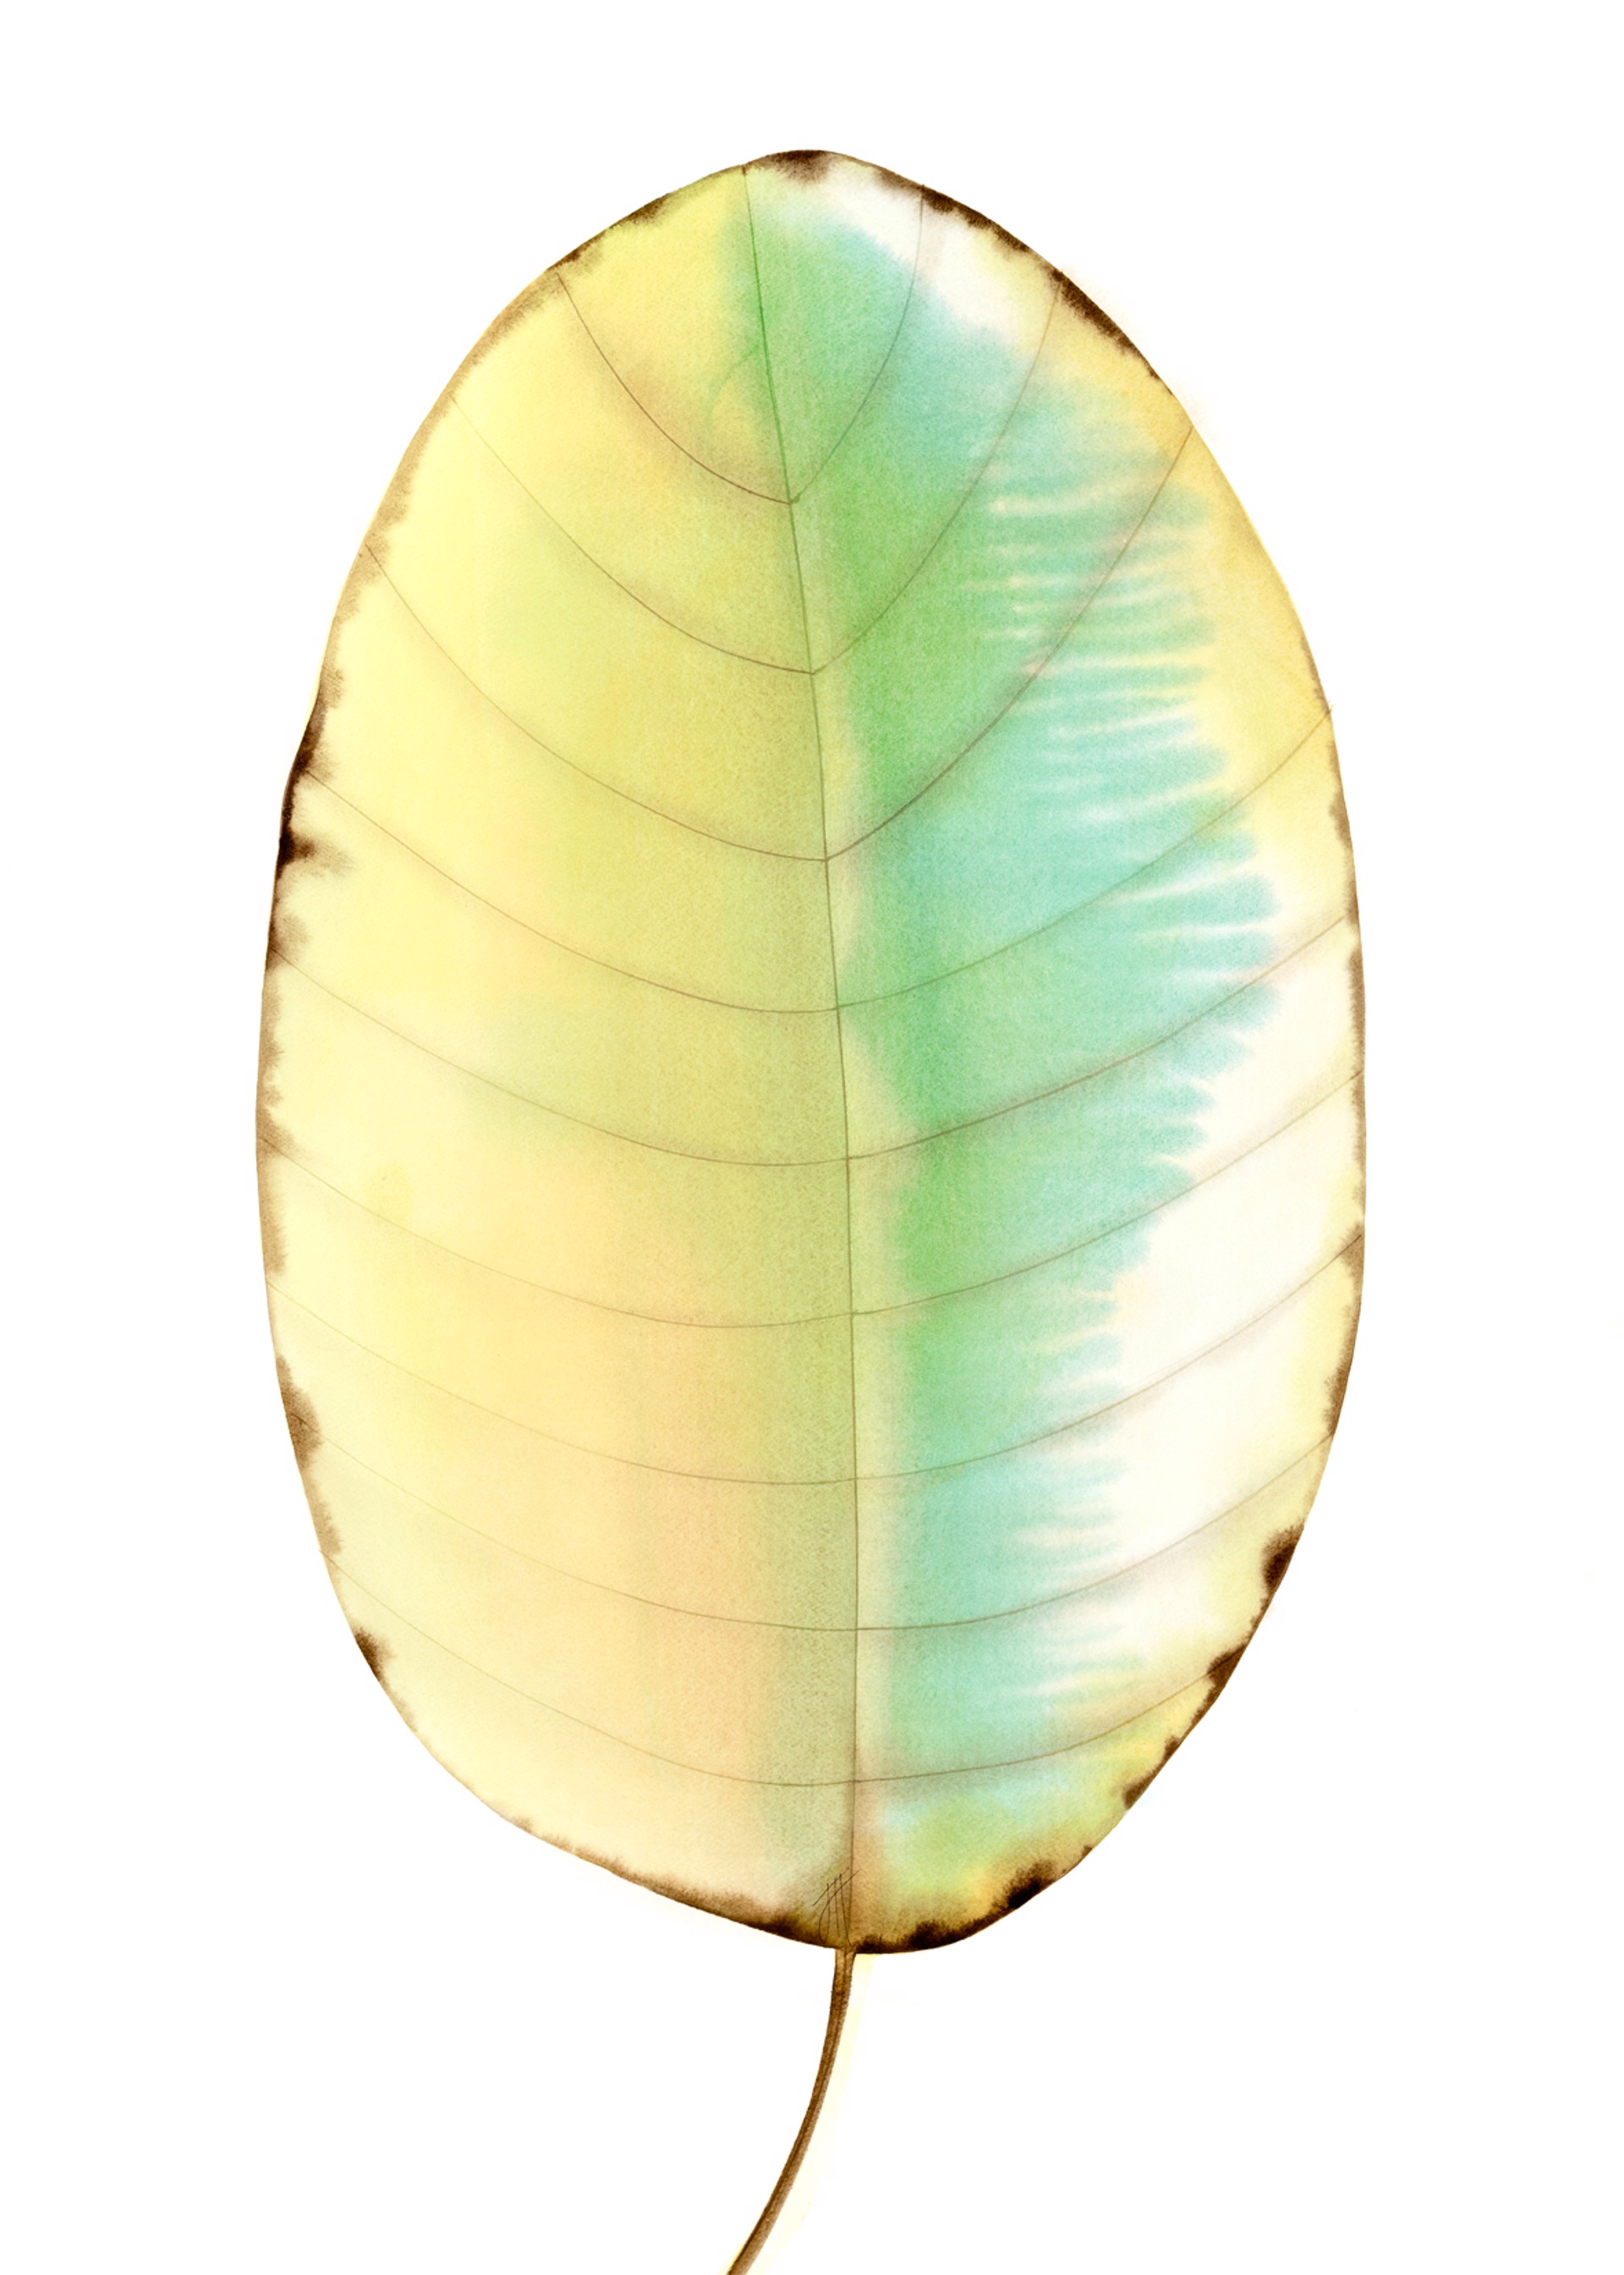 SOLD, Found Leaf | Magnolia by Jan Heaton